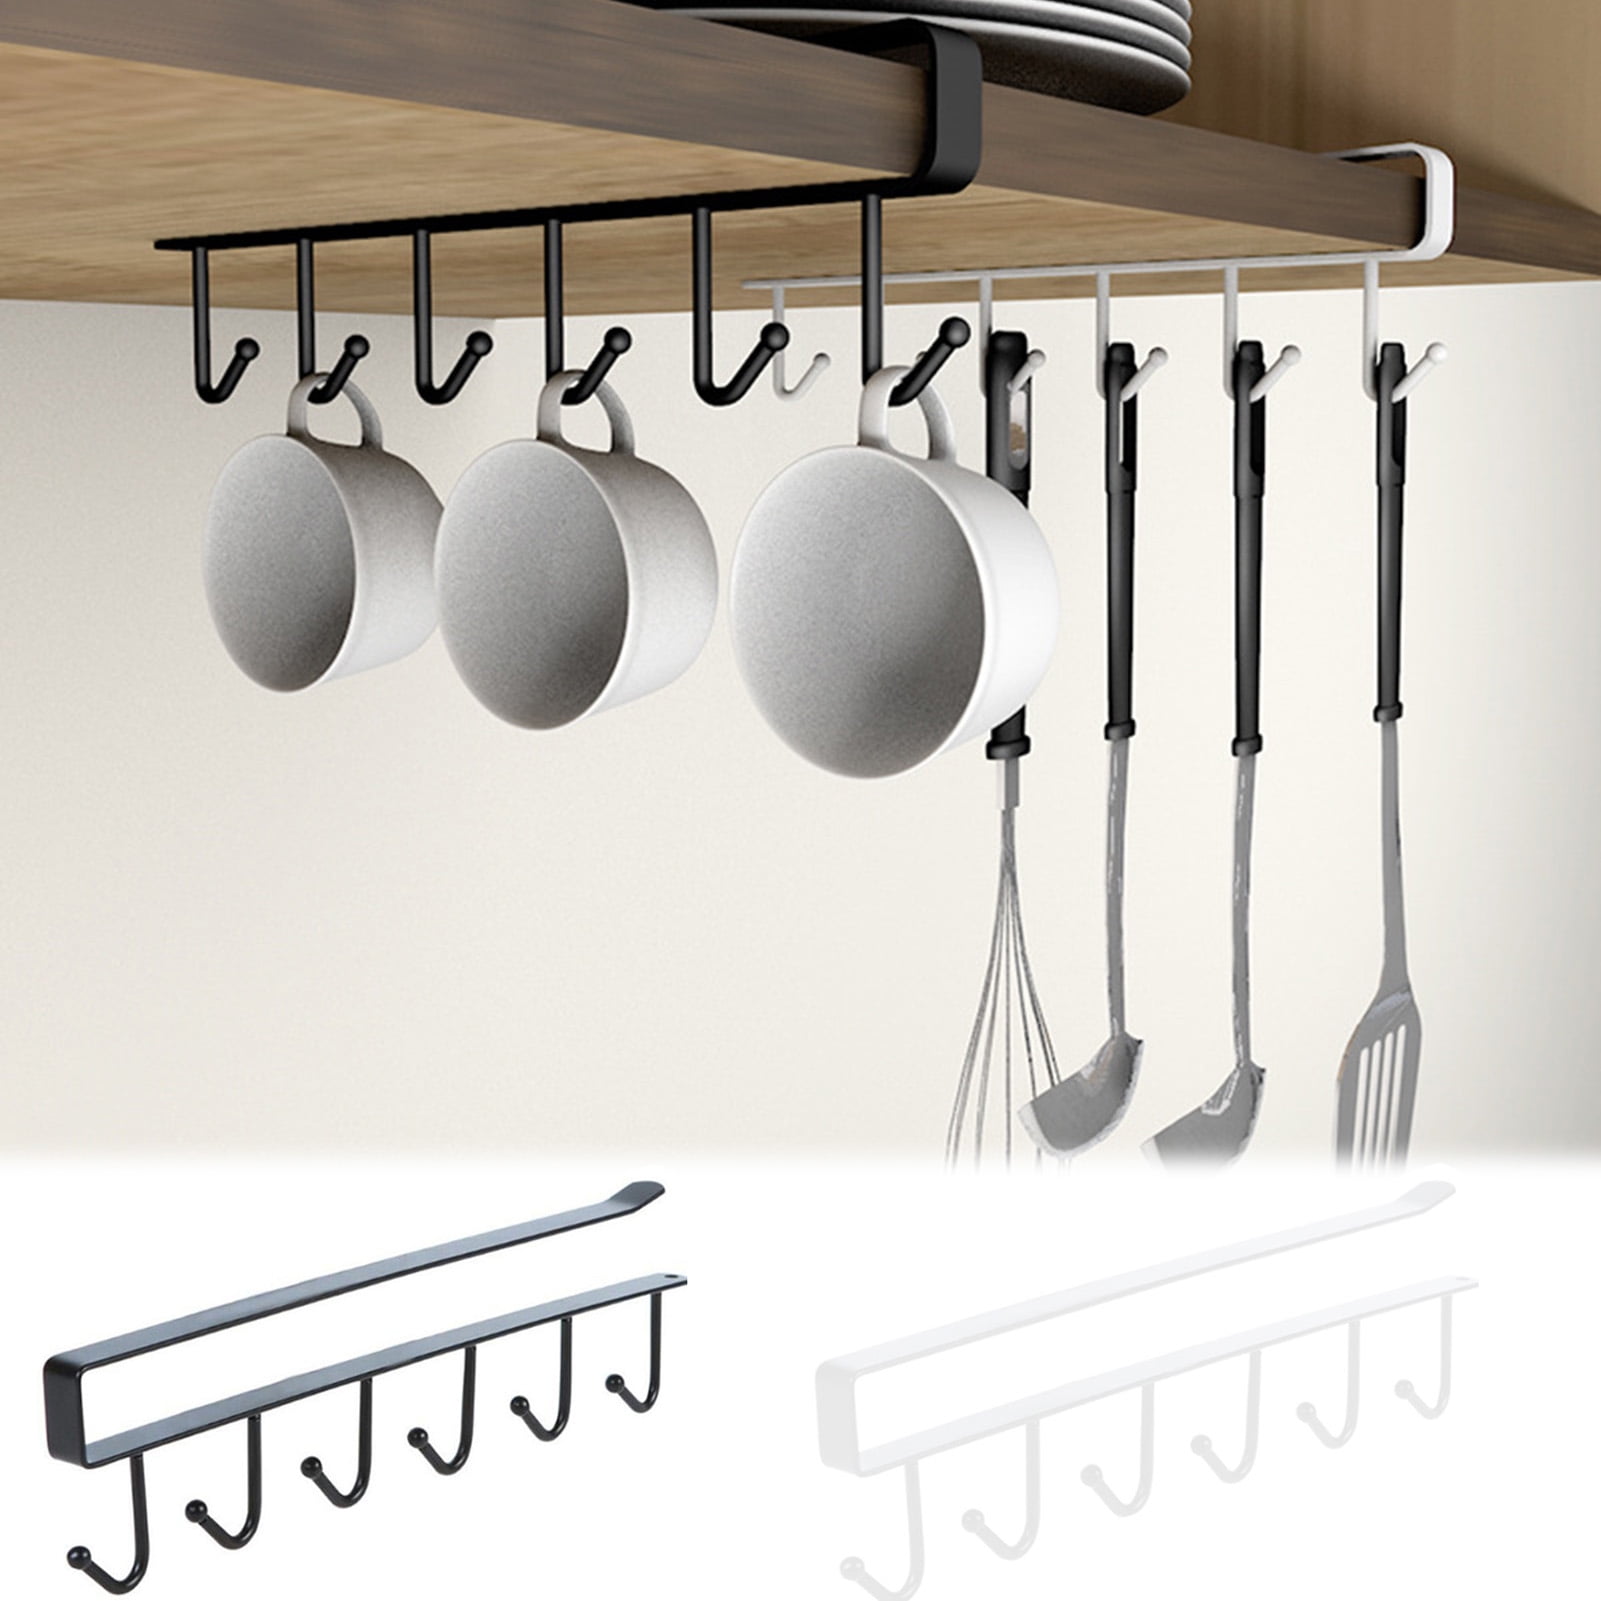 4 inch 2 Pc Utensil Racks with 3 hooks 4Inch Kitchen Utensil Holders Punch Free Hanging Utensil Rack Multifunctional 